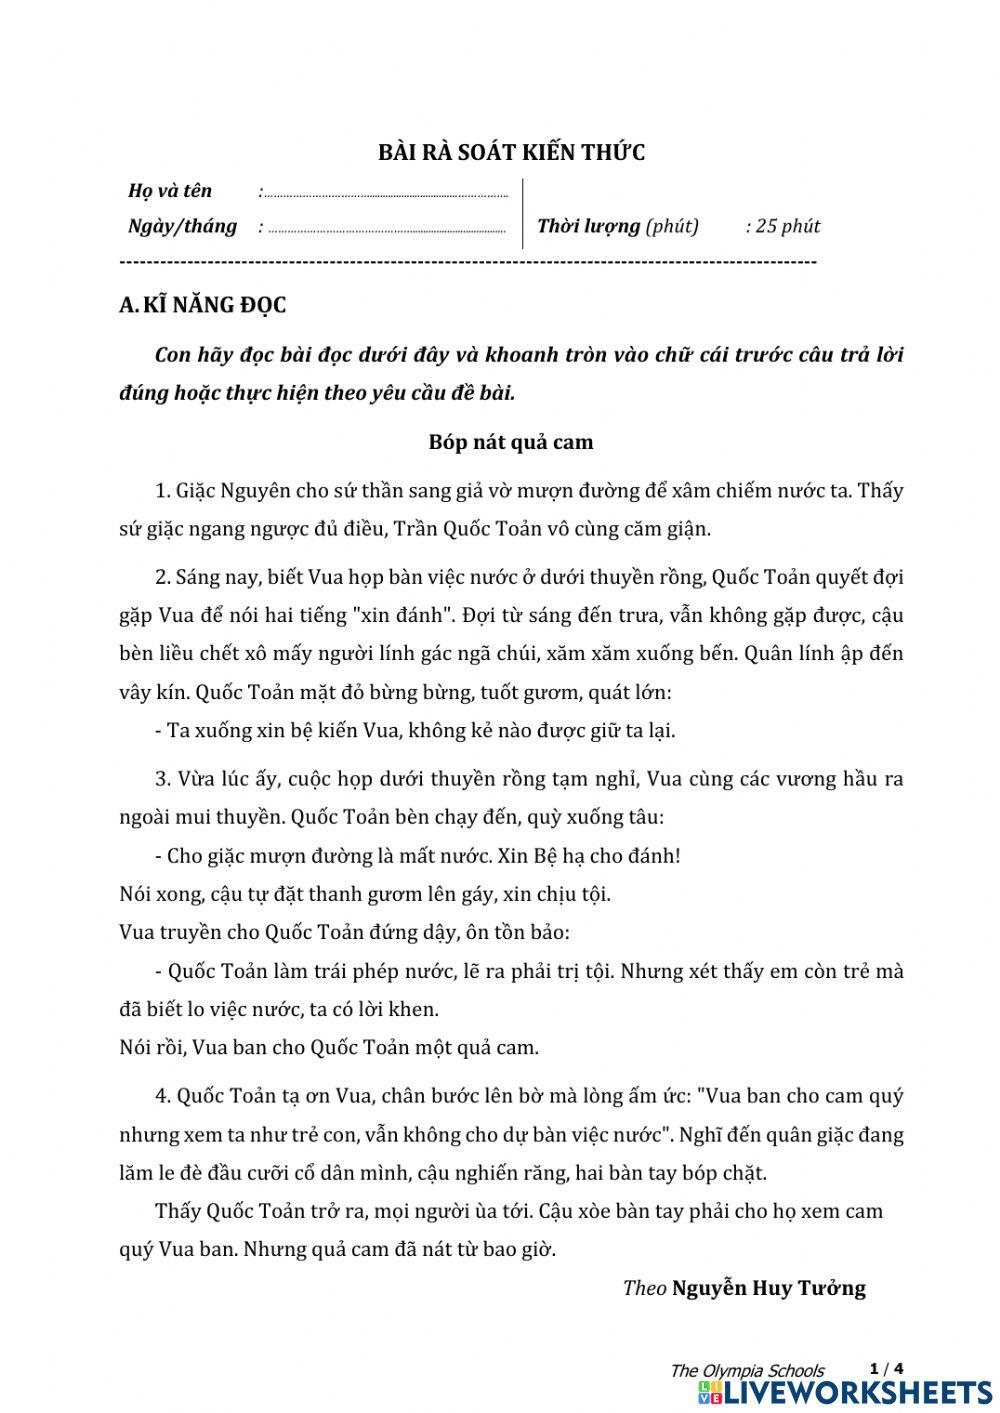 Bài rà soát môn Tiếng Việt